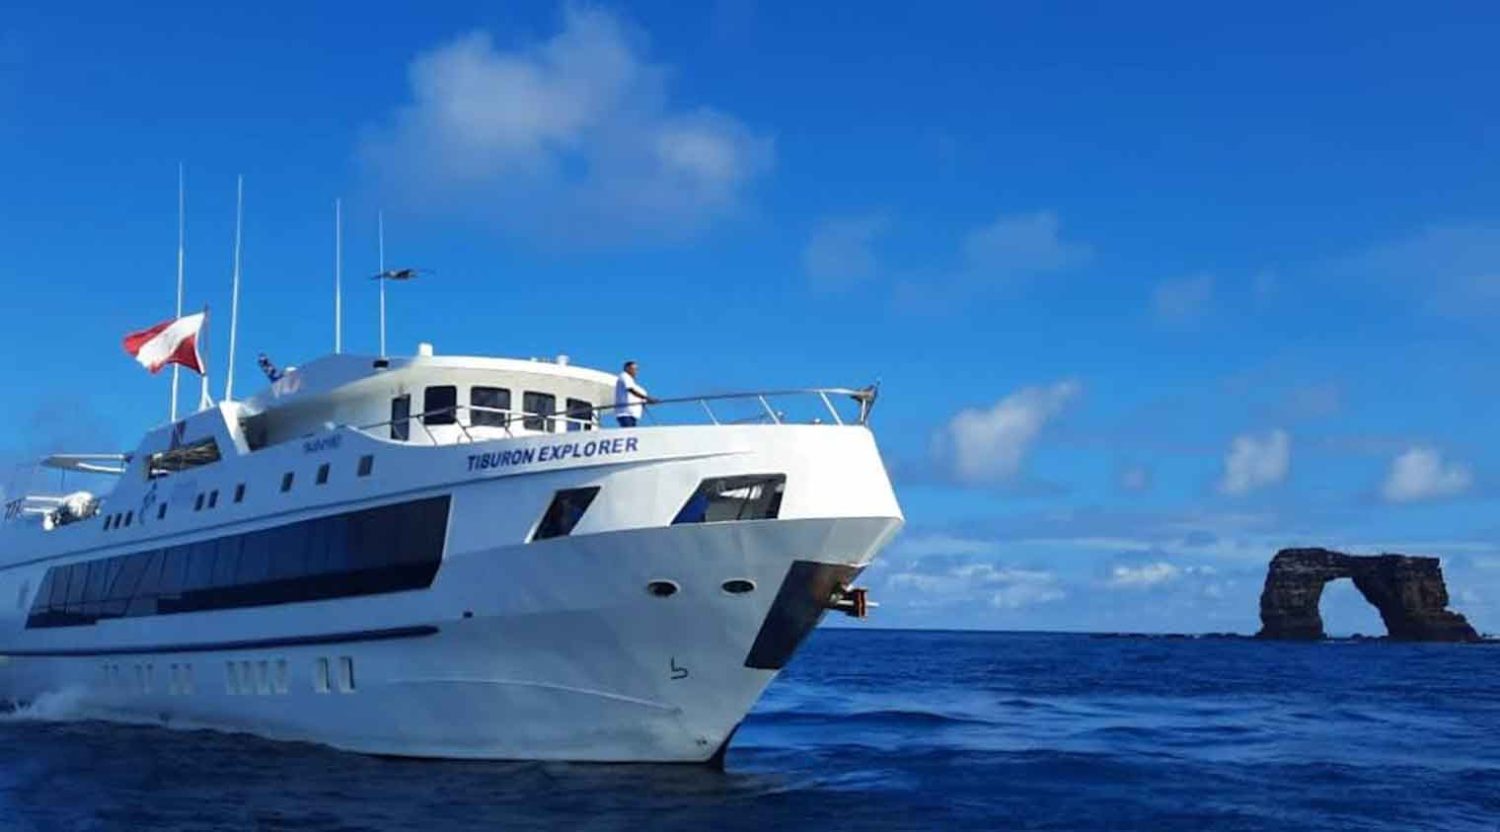 tiburon explorer yacht of galapagos islands